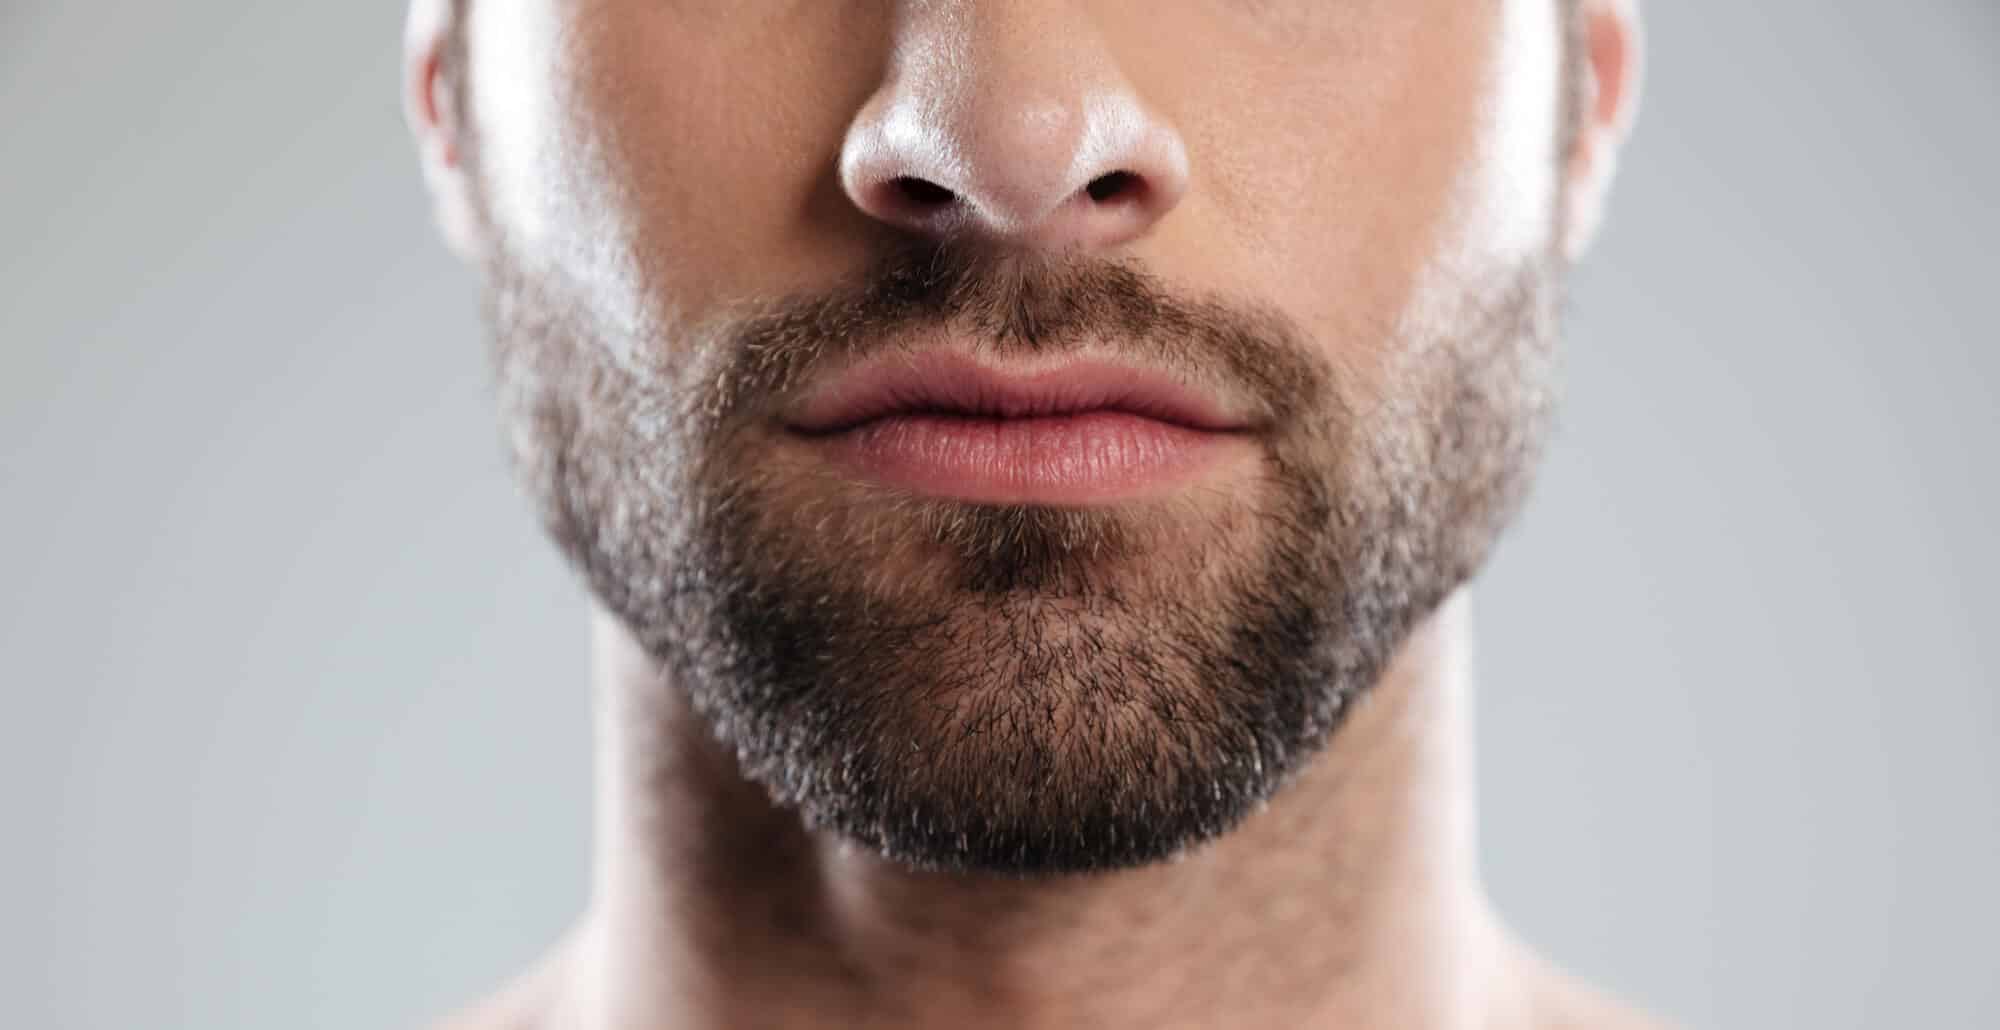 Épilation de la barbe chez l'homme : et si vous passiez au définitif ?